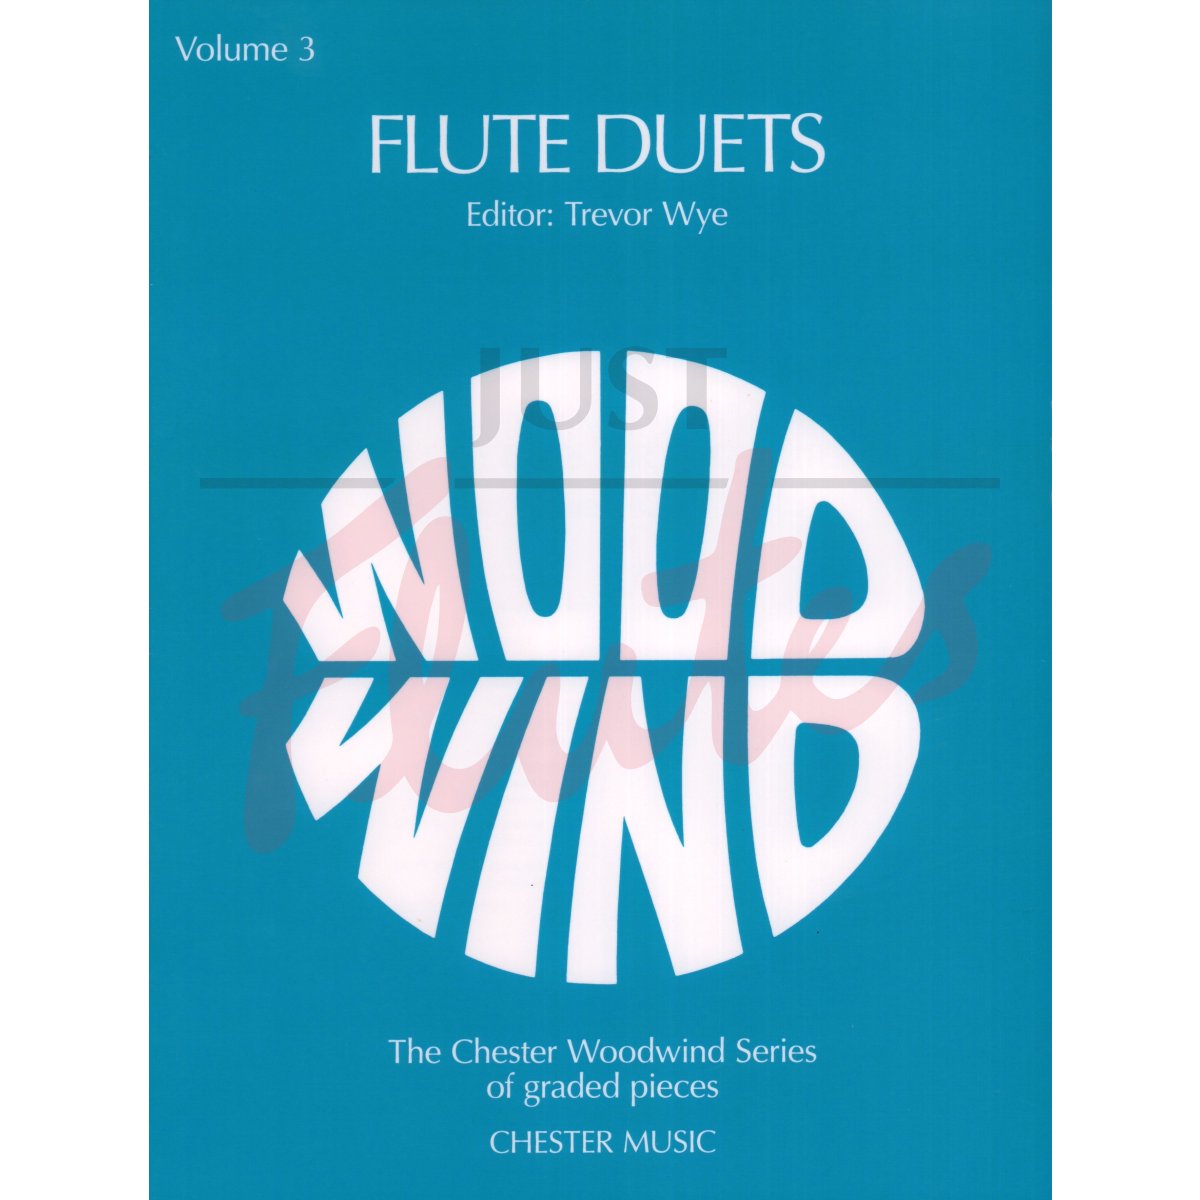 Flute Duets Vol 3